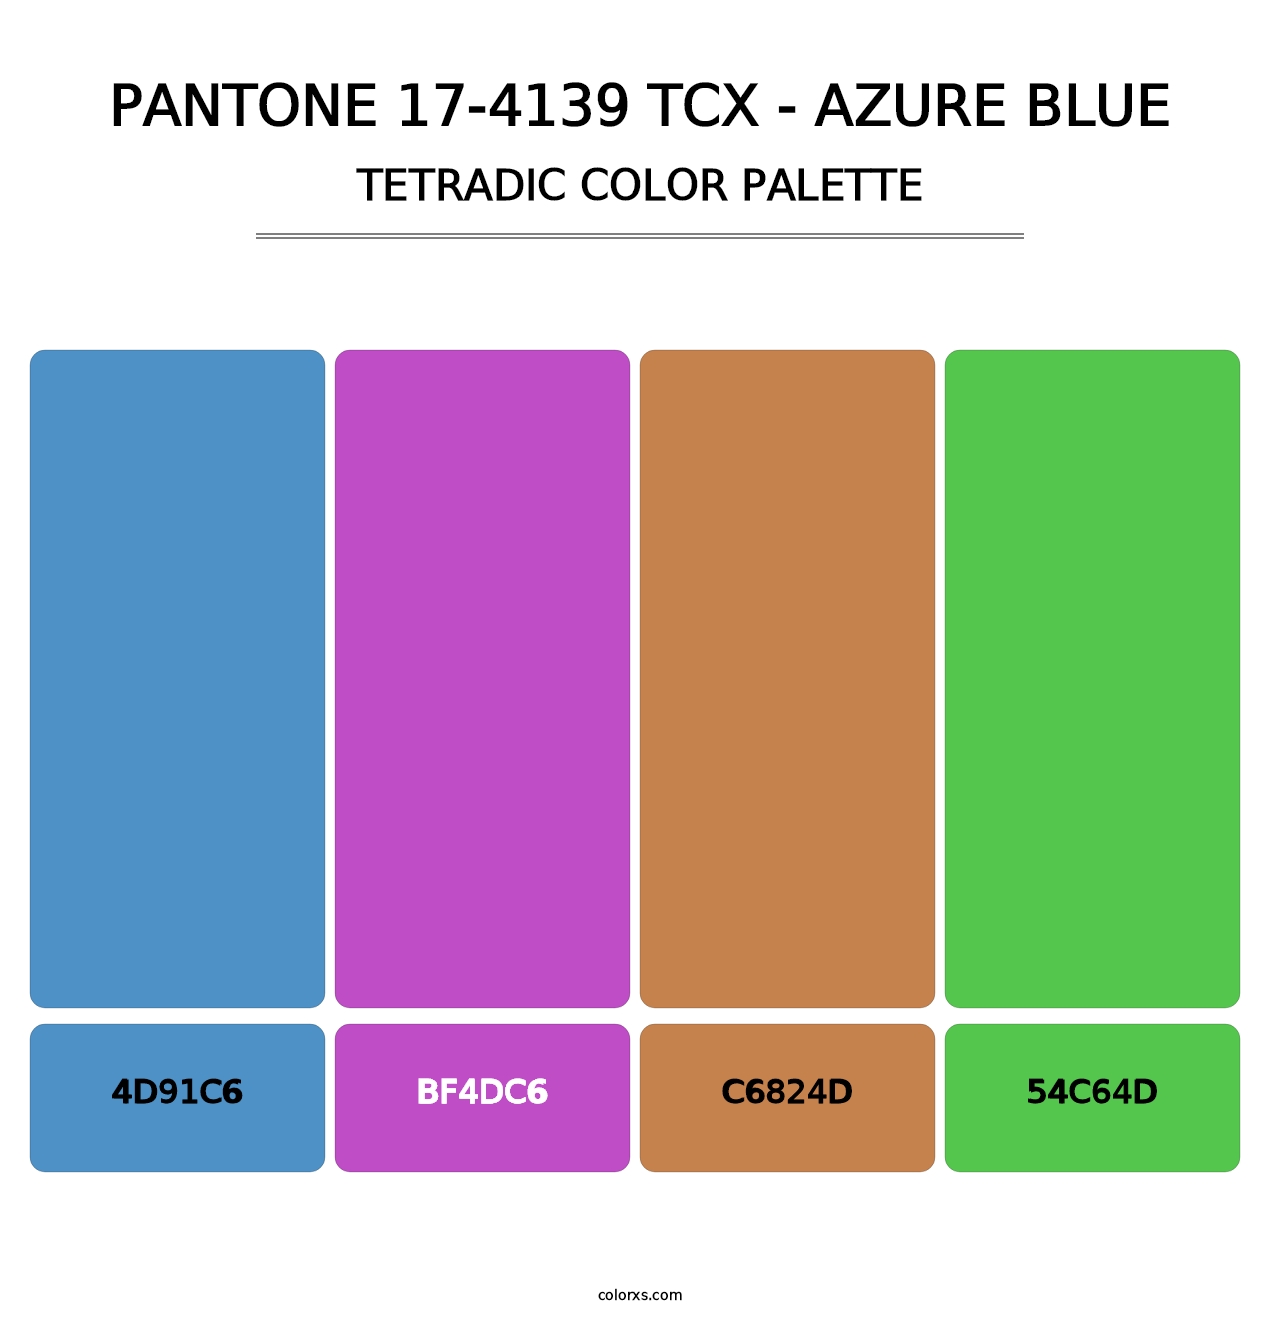 PANTONE 17-4139 TCX - Azure Blue - Tetradic Color Palette